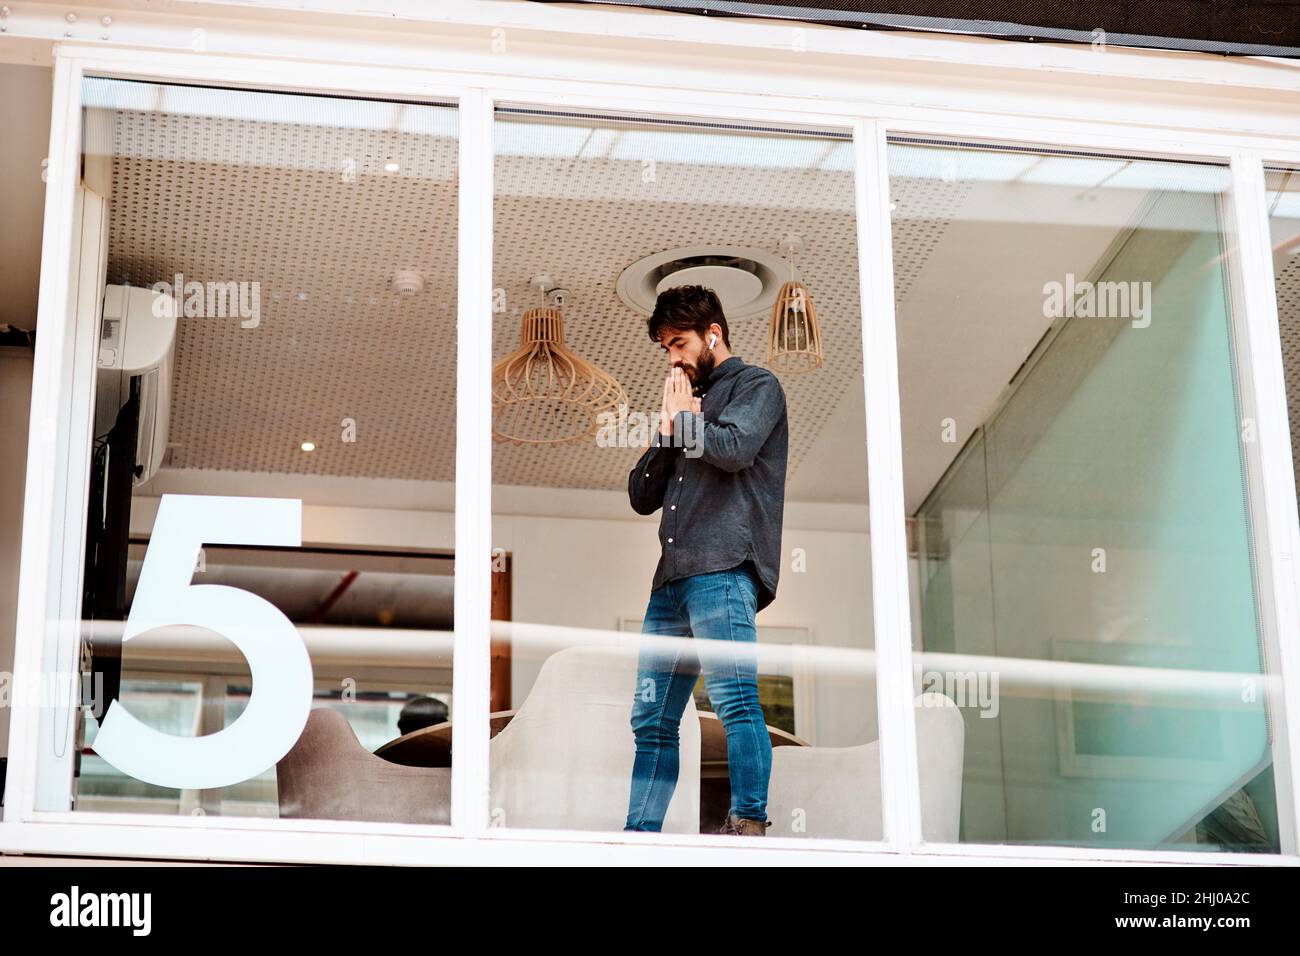 Ich hoffe, das klappt. Aufnahme eines jungen Geschäftsmannes, der ängstlich aussieht, während er an einer Glaswand in einem Büro steht. Stockfoto